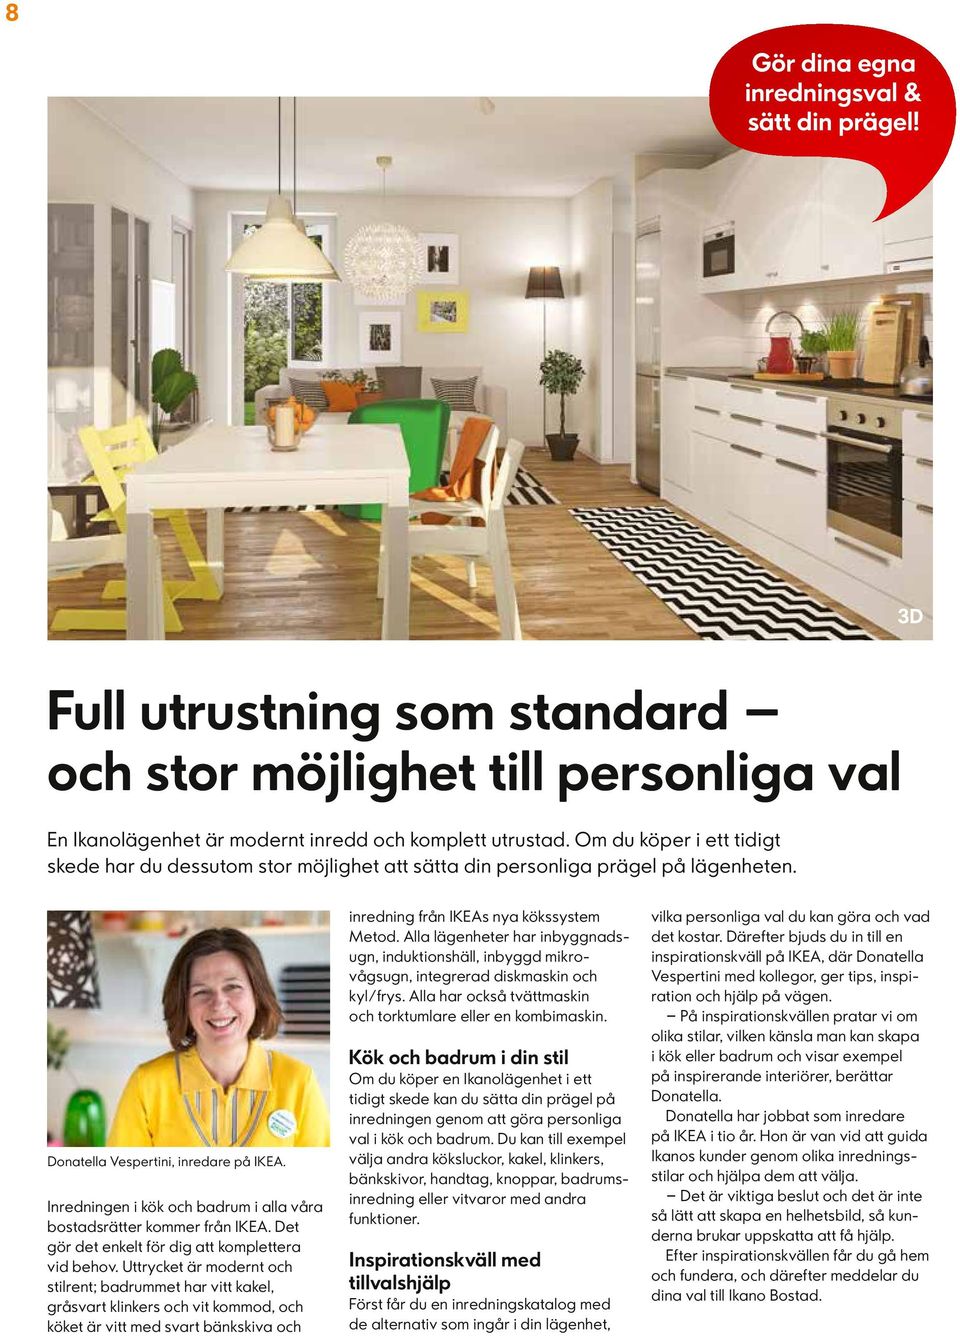 Inredningen i kök och badrum i alla våra bostadsrätter kommer från IKEA. Det gör det enkelt för dig att komplettera vid behov.